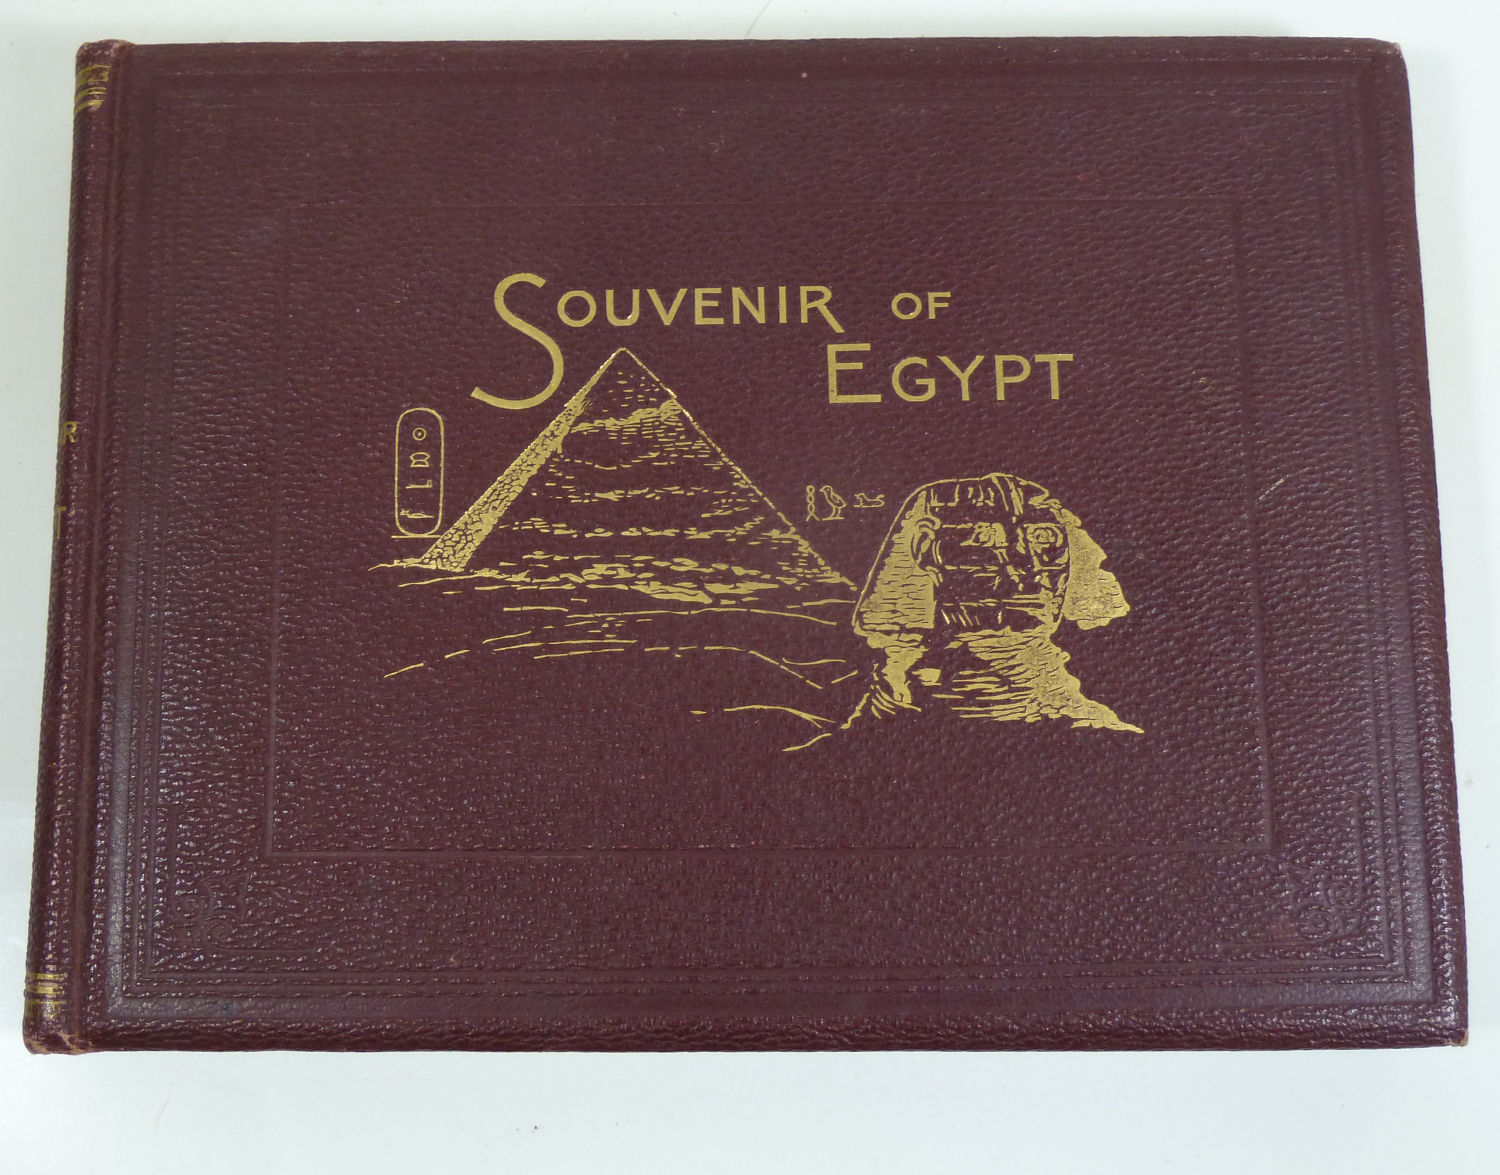 George-Ch-Dovas-Souvenir-of-Egypt-1898.jpg